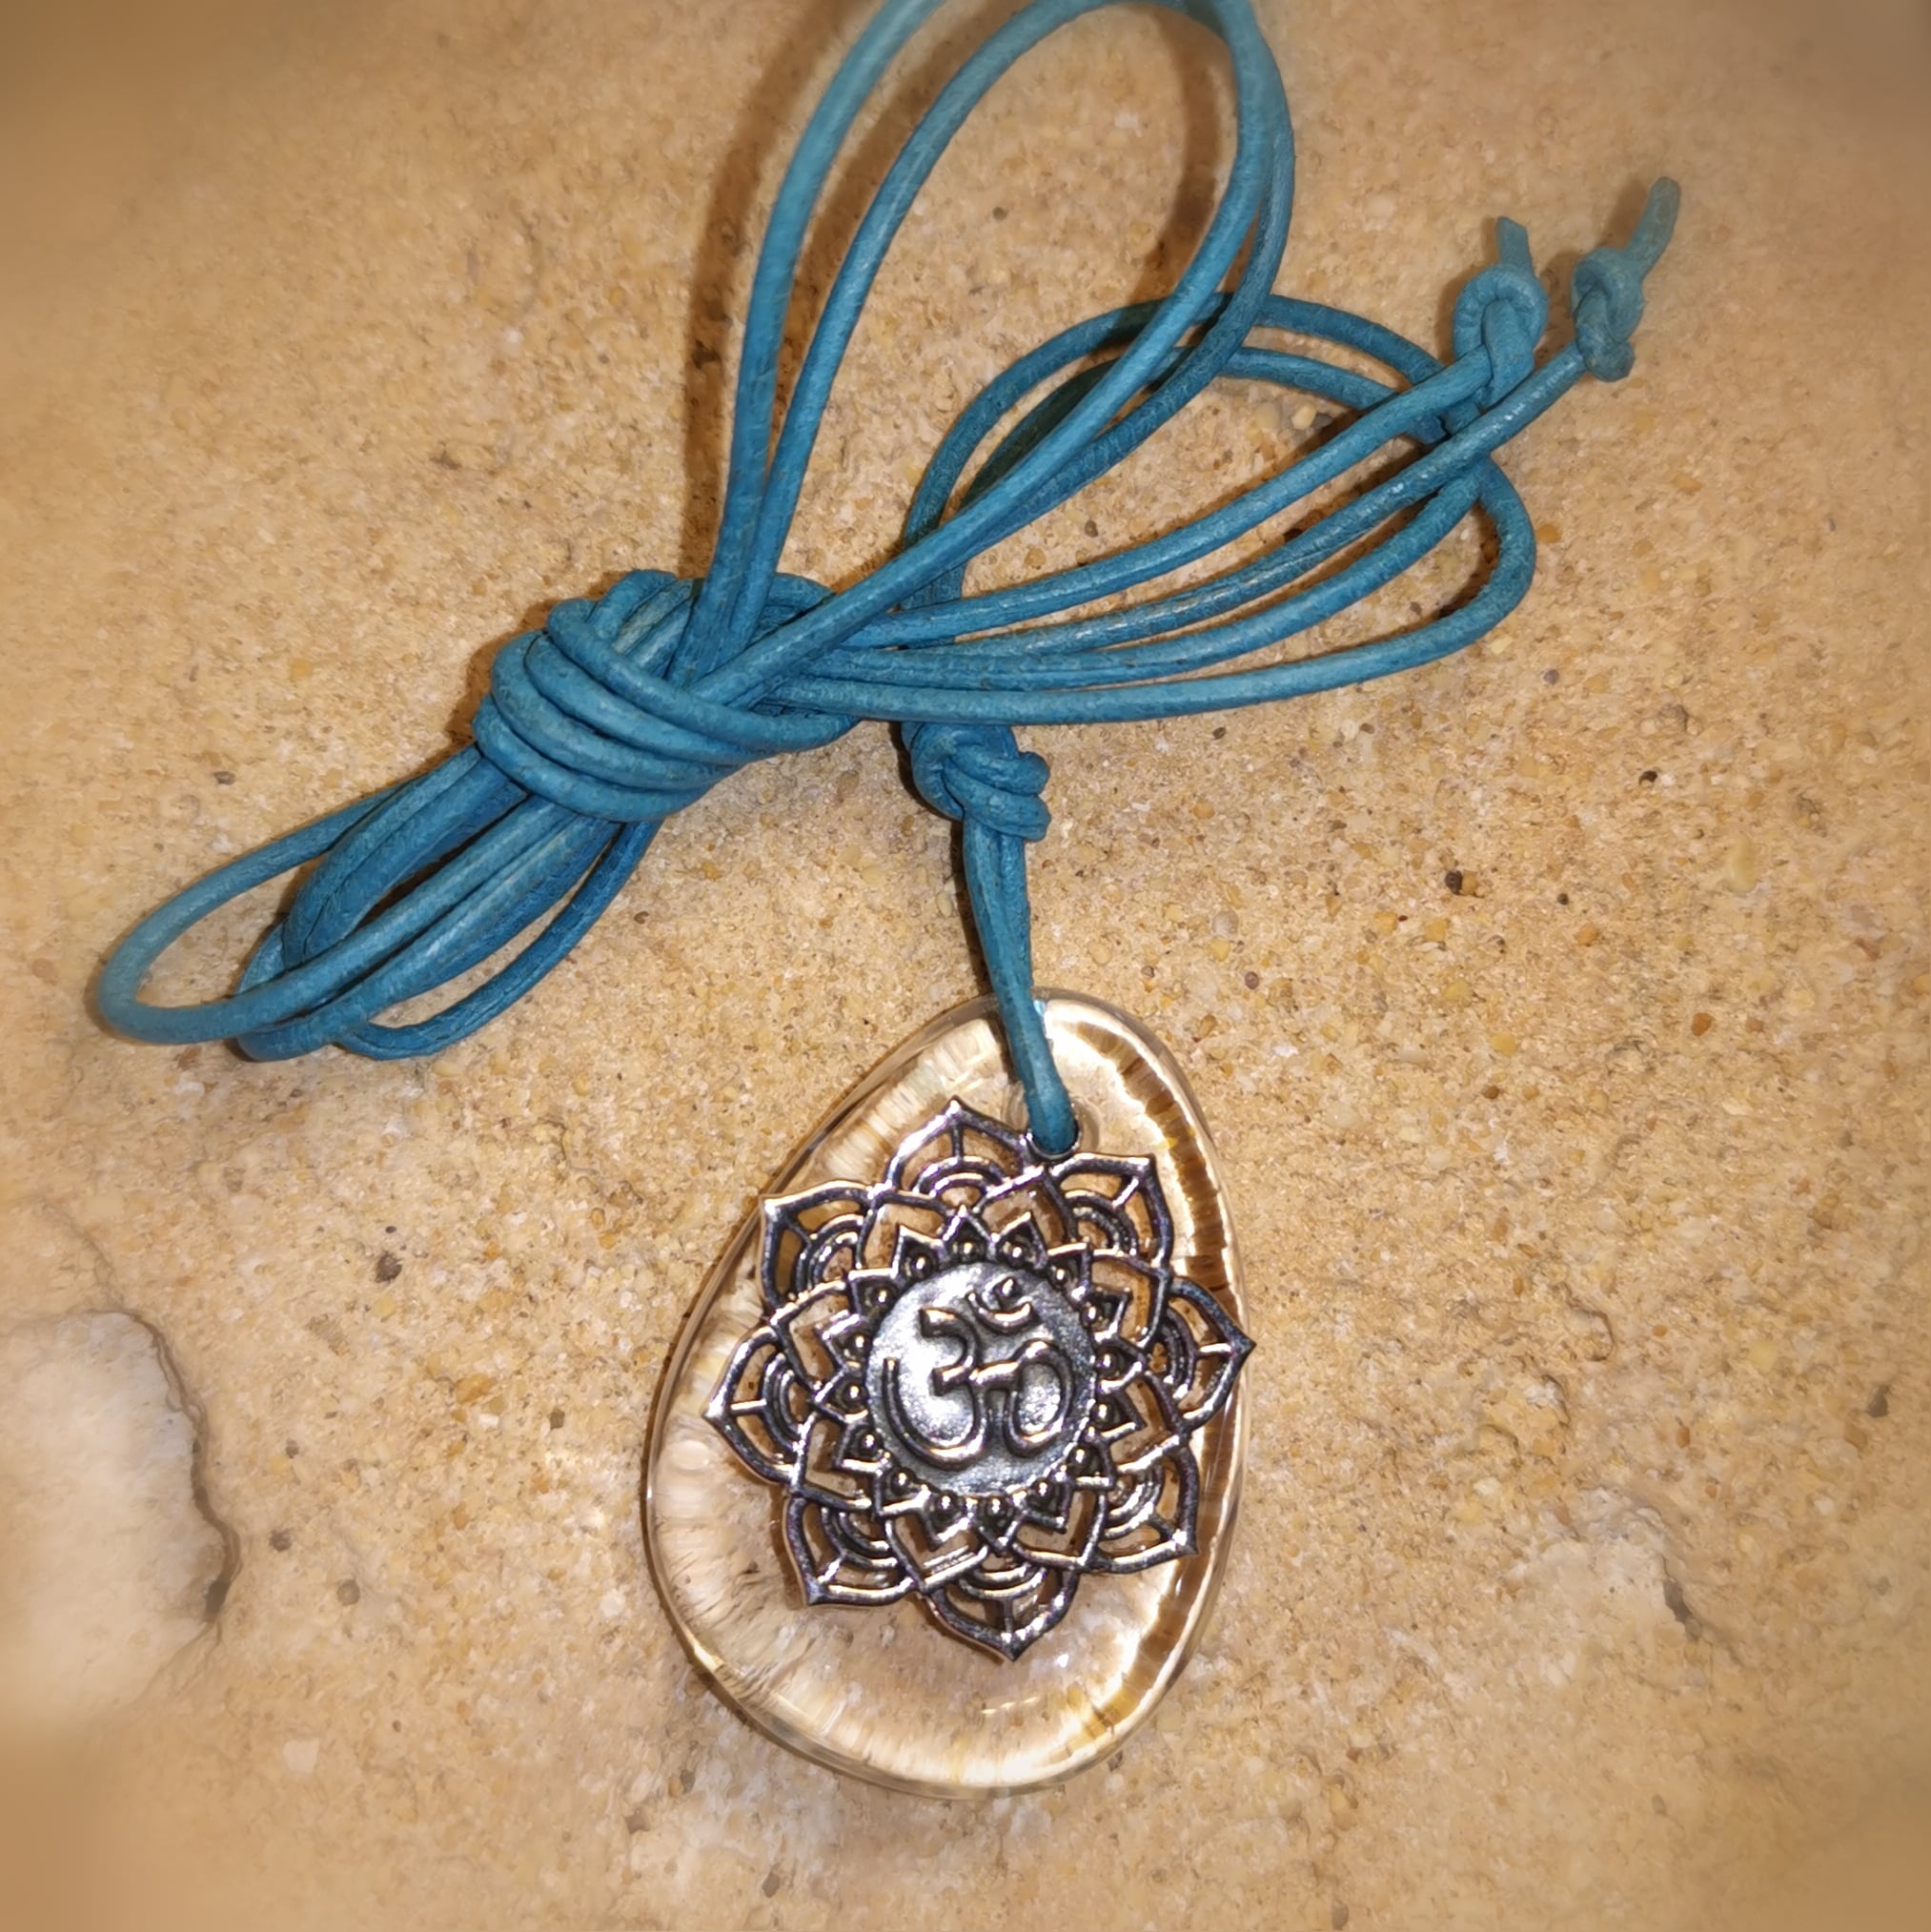 Bergkristall OM Amulett, Symbol Edelstein Heilstein Karma Kette, entspannt im Vertrauen, samaki